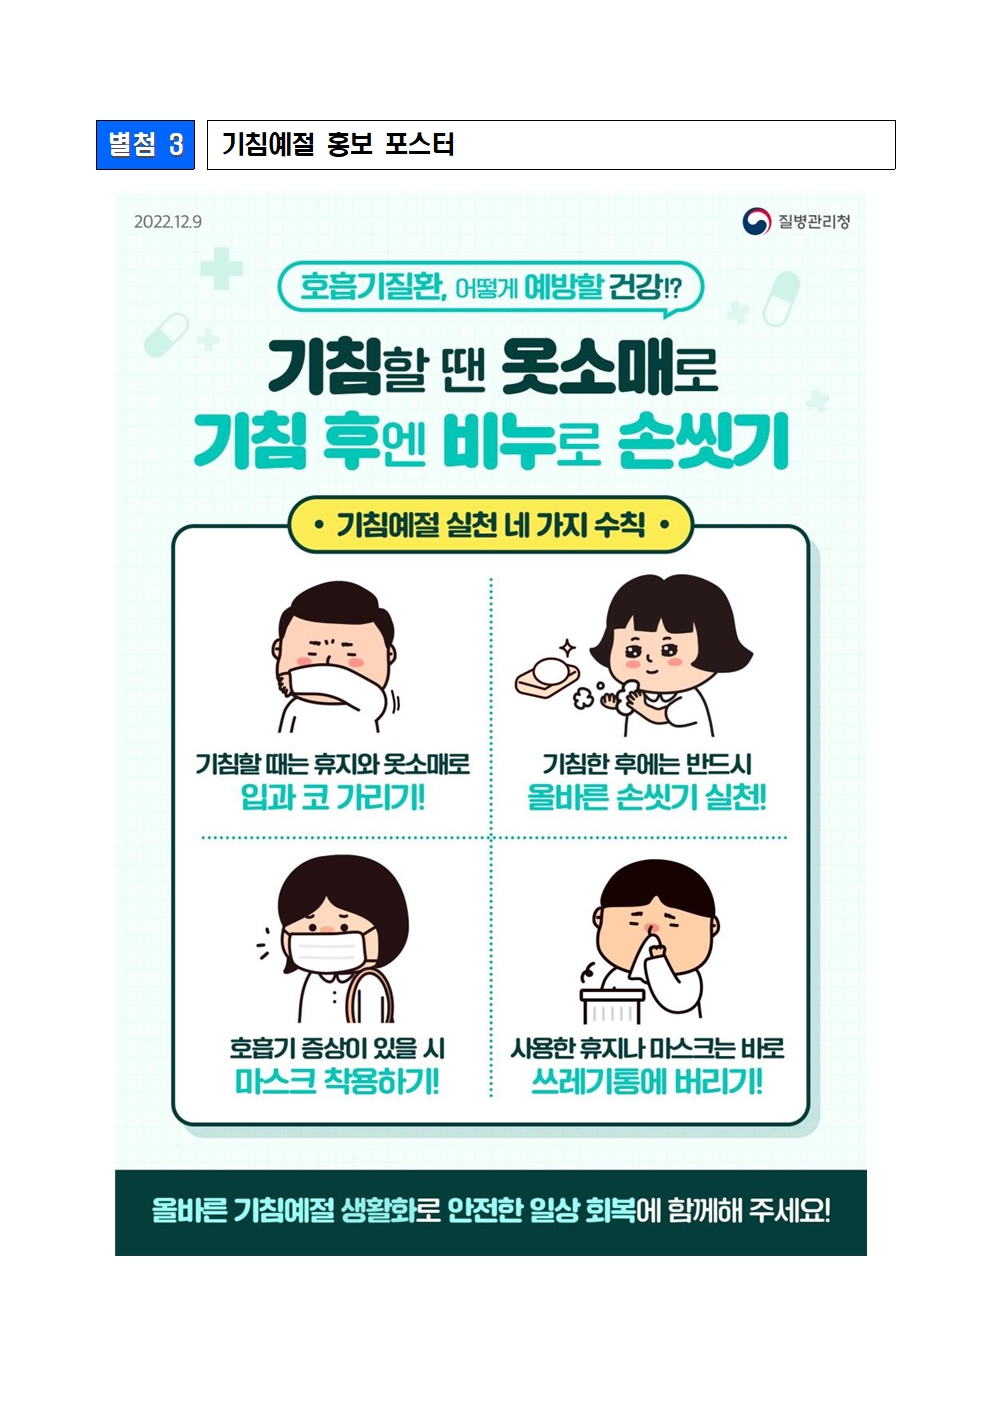 홍역， 기침예절 예방수칙 포스터003